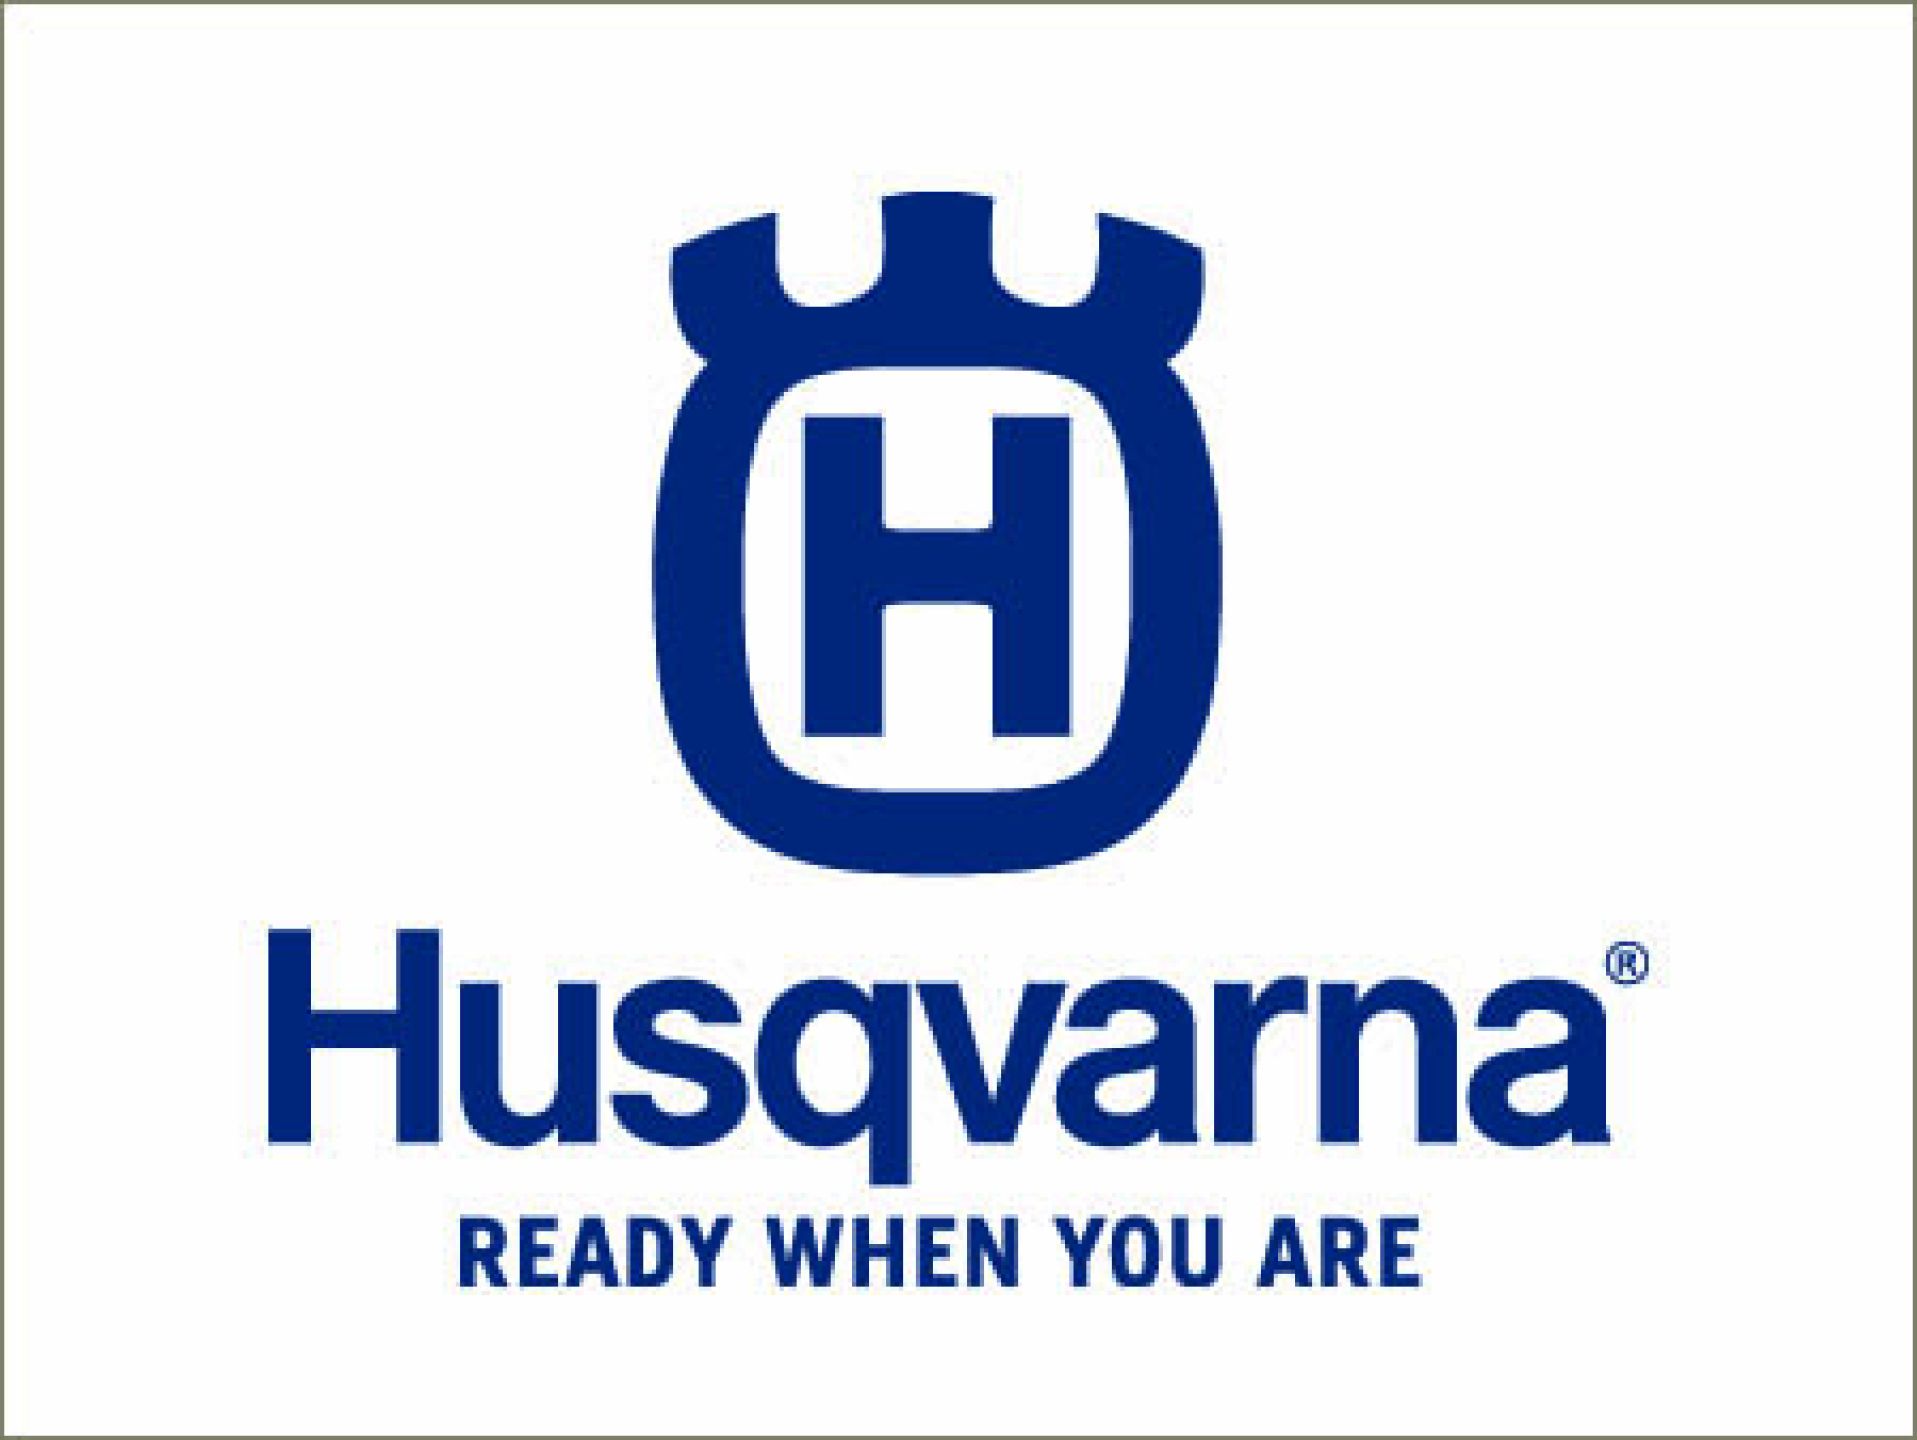 HBH-Baumaschinen-Fachmarkt-HUSQVARNA-5933d6c0 HBH Baumaschinenhandel - Mieten oder Kaufen